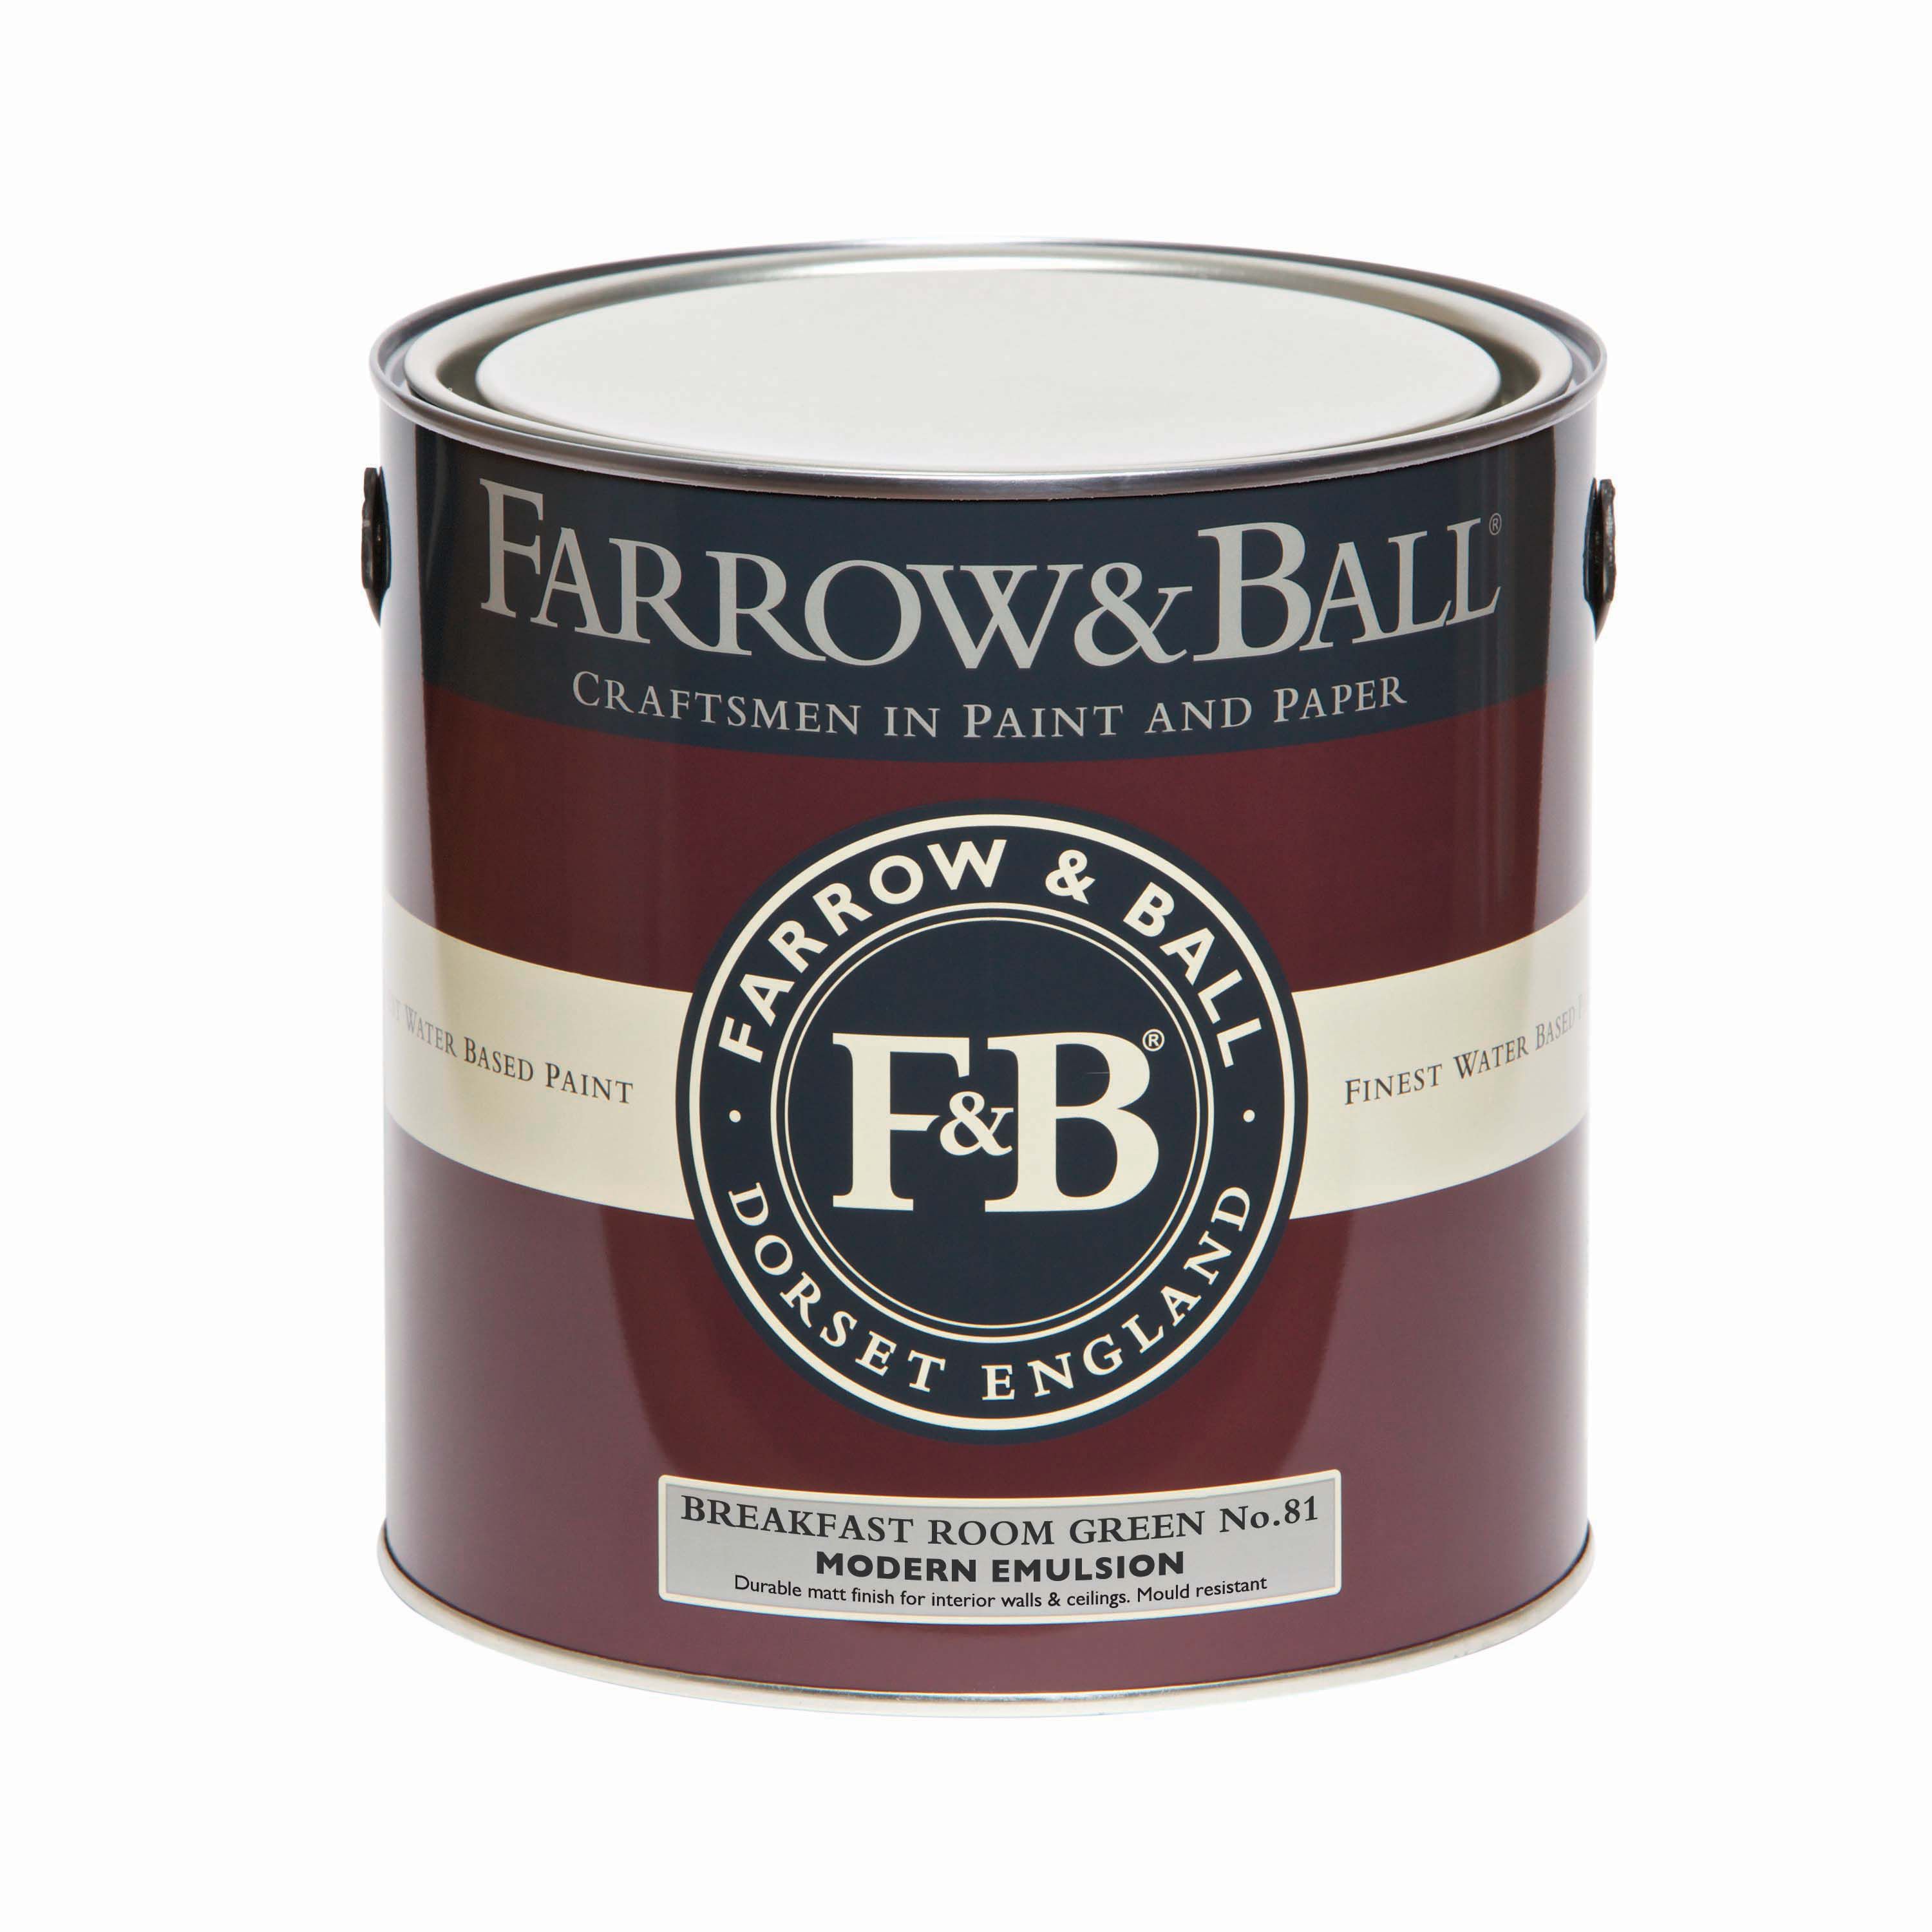 Farrow & Ball Modern Breakfast Room Green No.81 Matt Emulsion paint, 2.5L